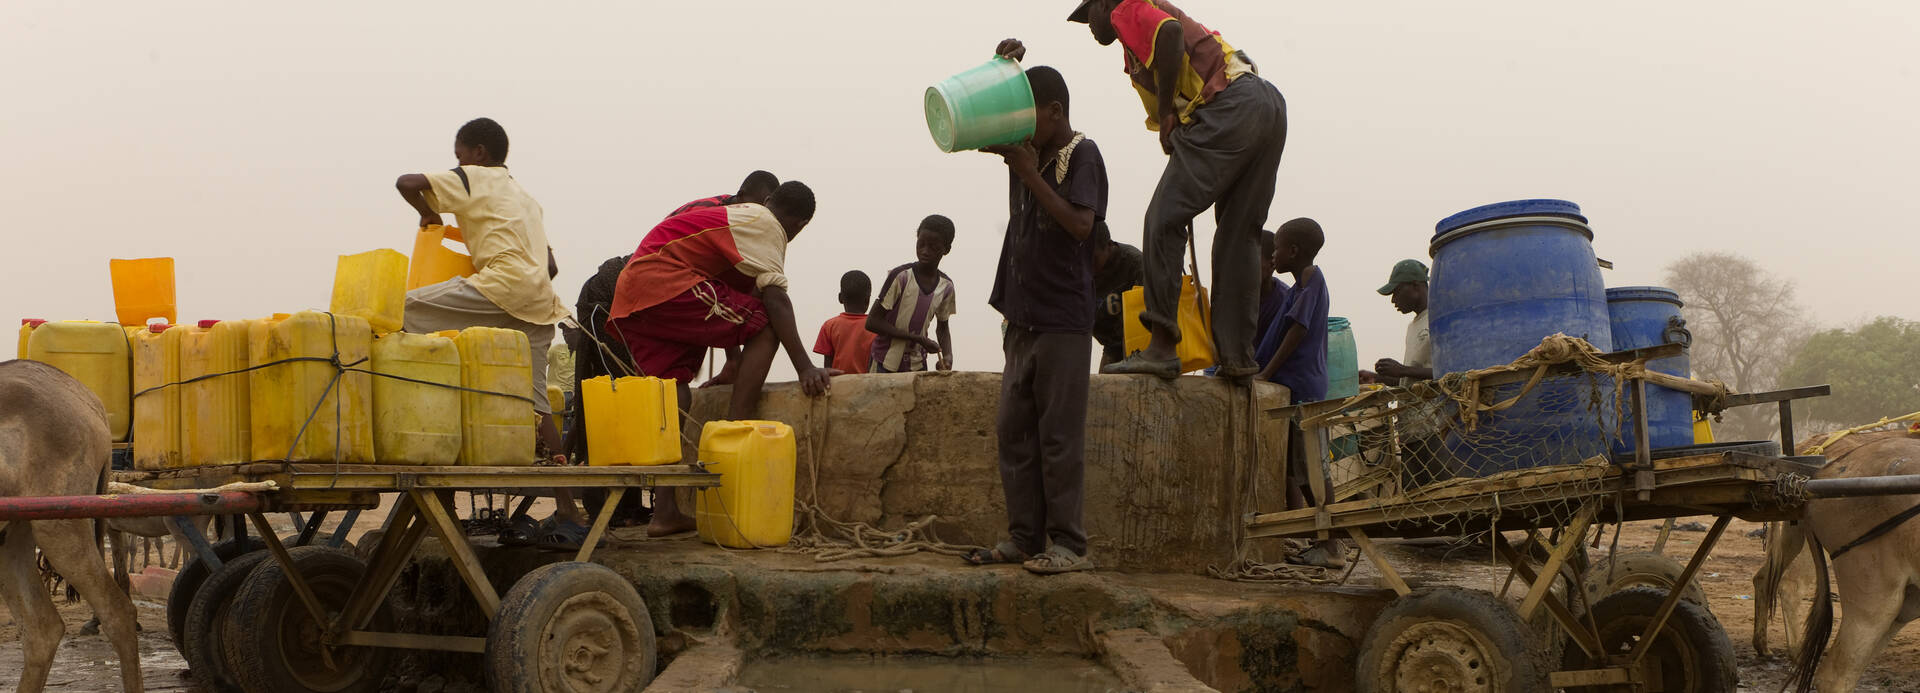 Wasserstelle in Mauretanien